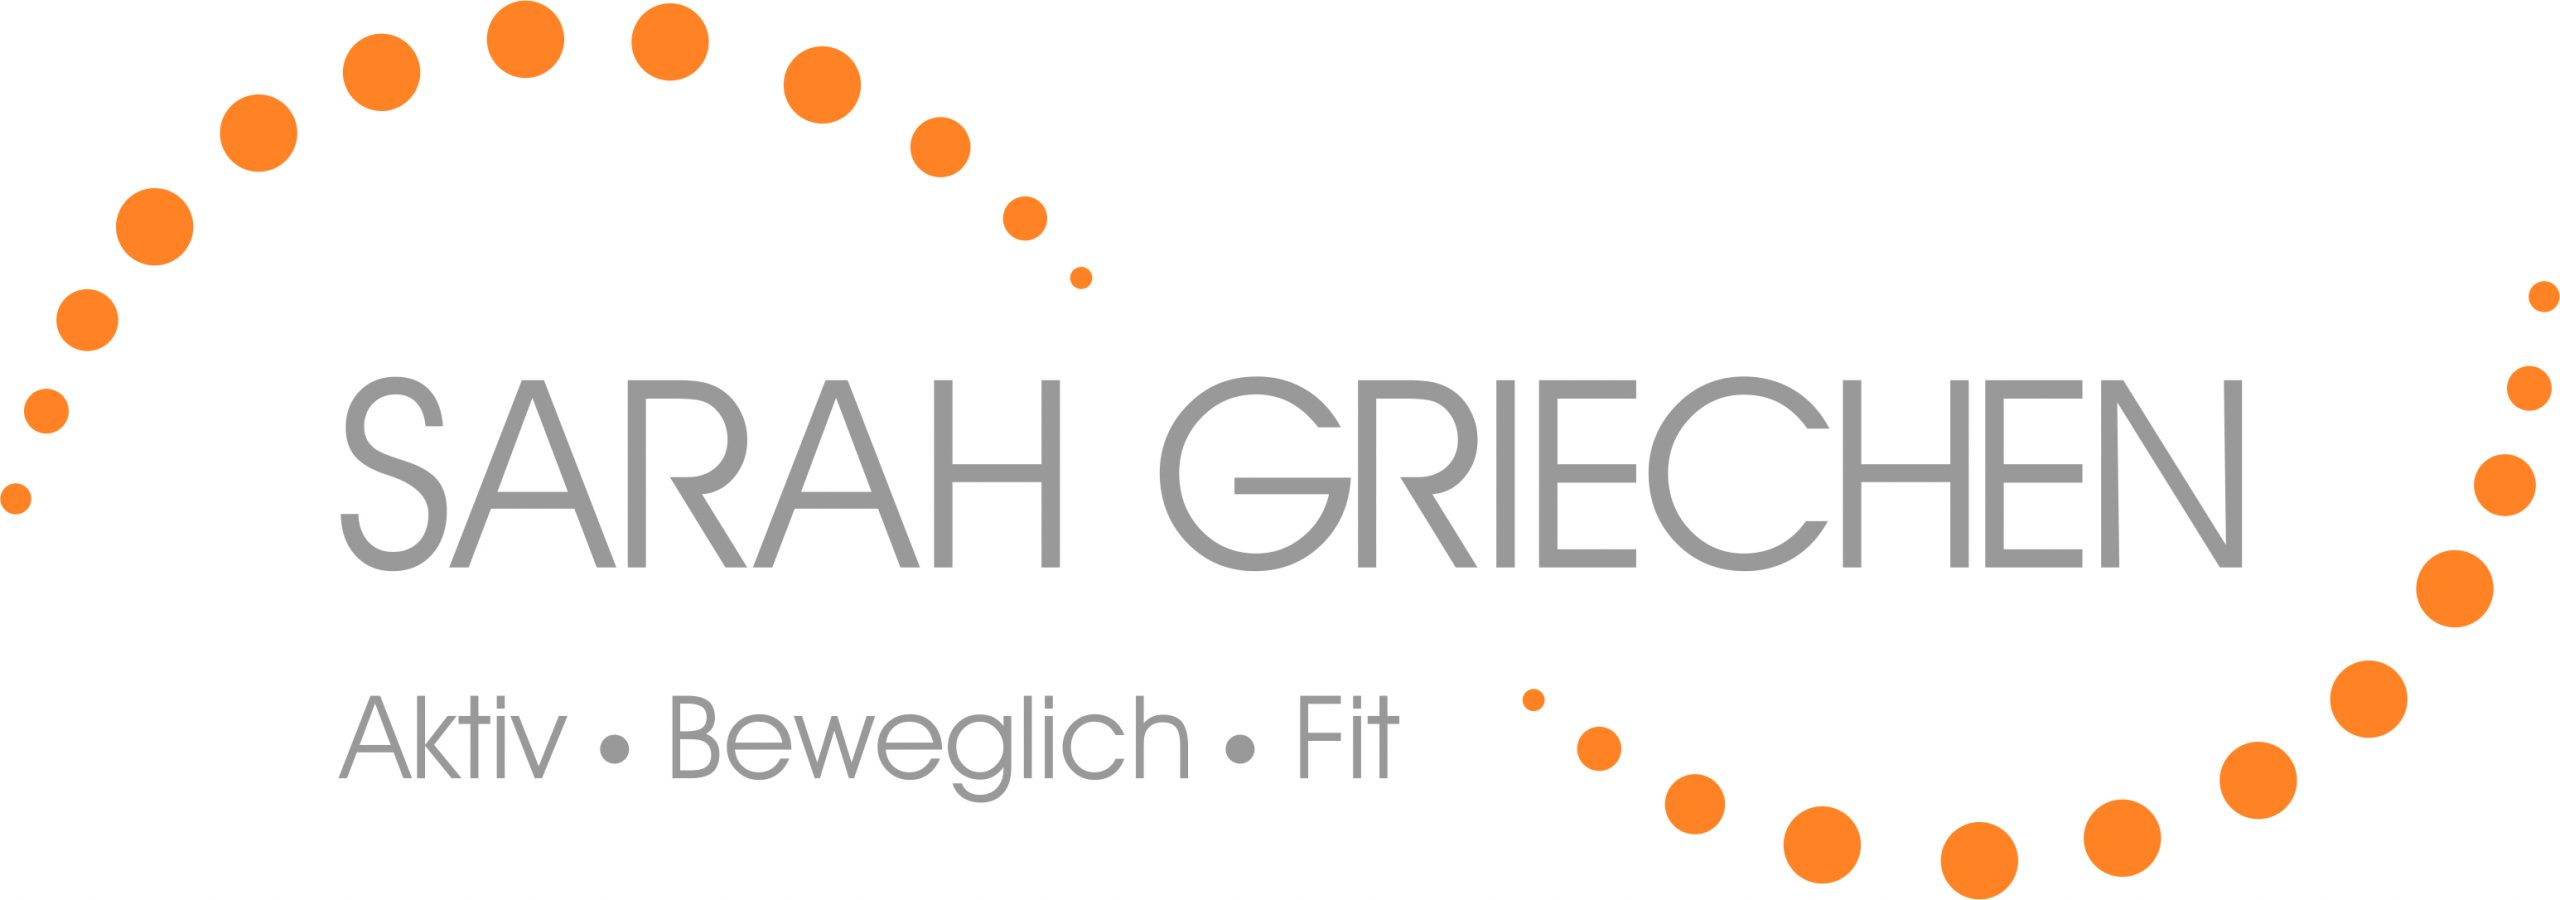 Sarah Griechen – Aktiv.Beweglich.Fit.